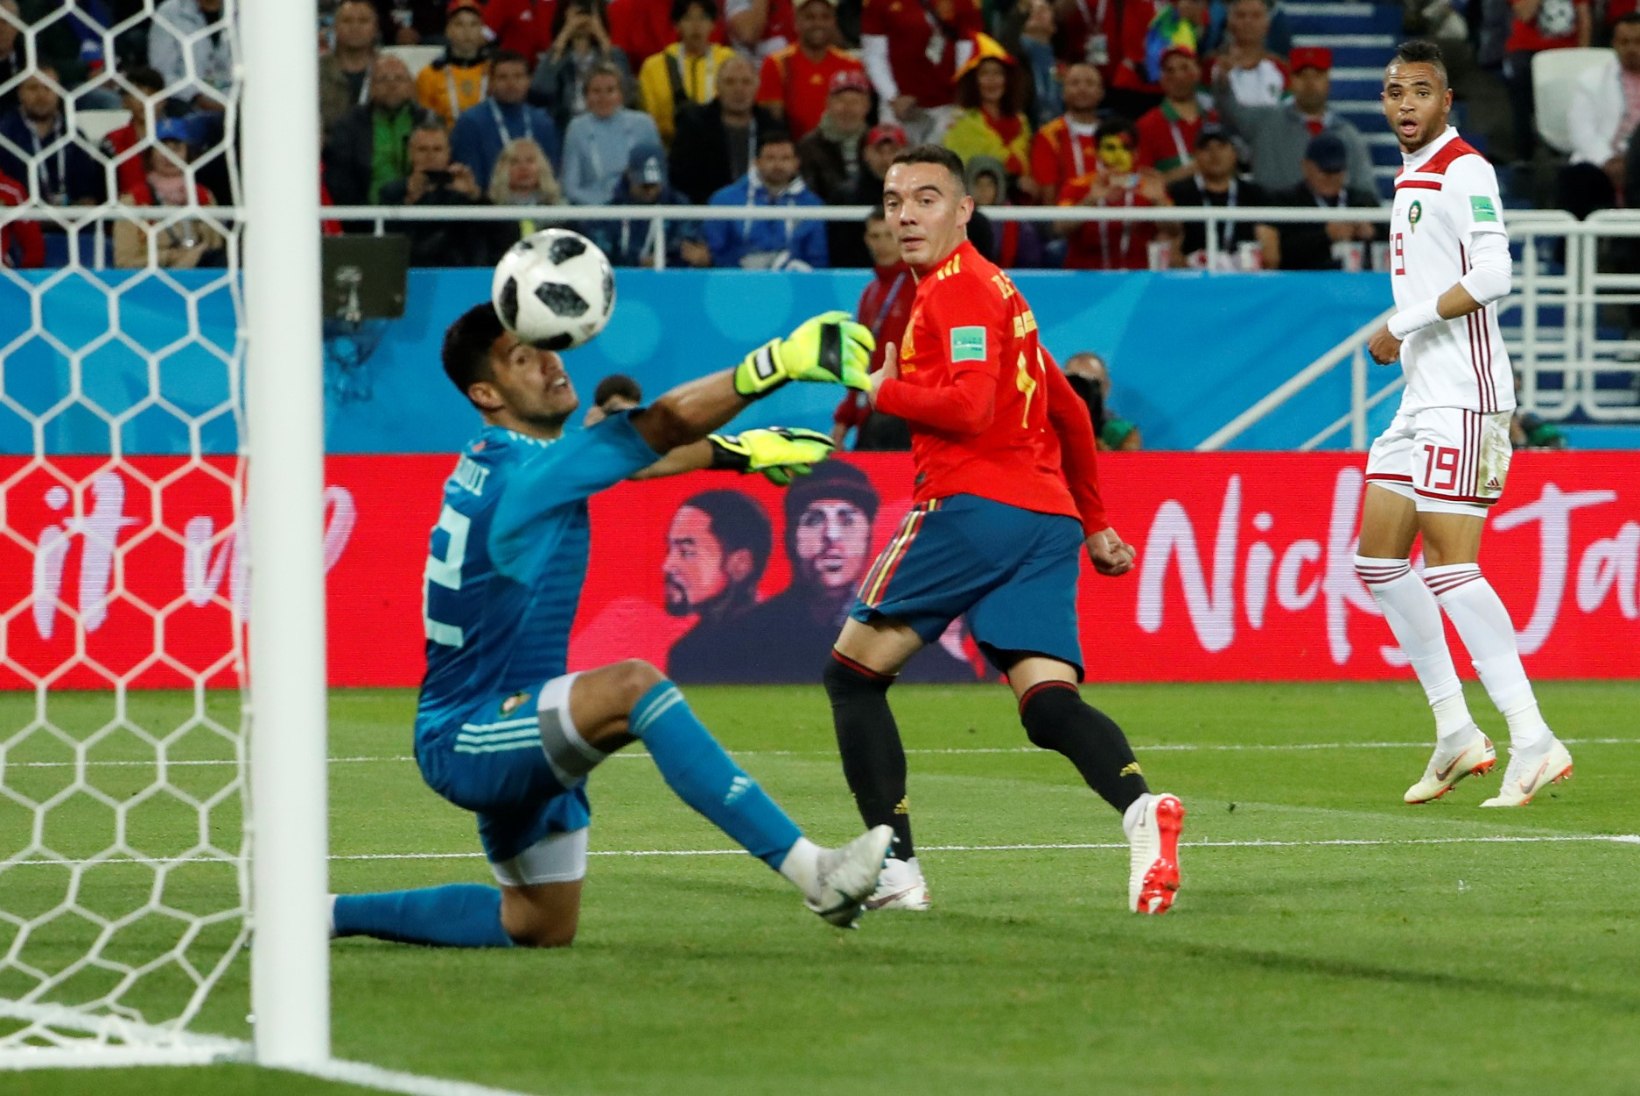 NII SEE JUHTUS | Jalgpalli MM: Hispaania võitis Portugali ees alagrupi tänu löödud väravate arvule